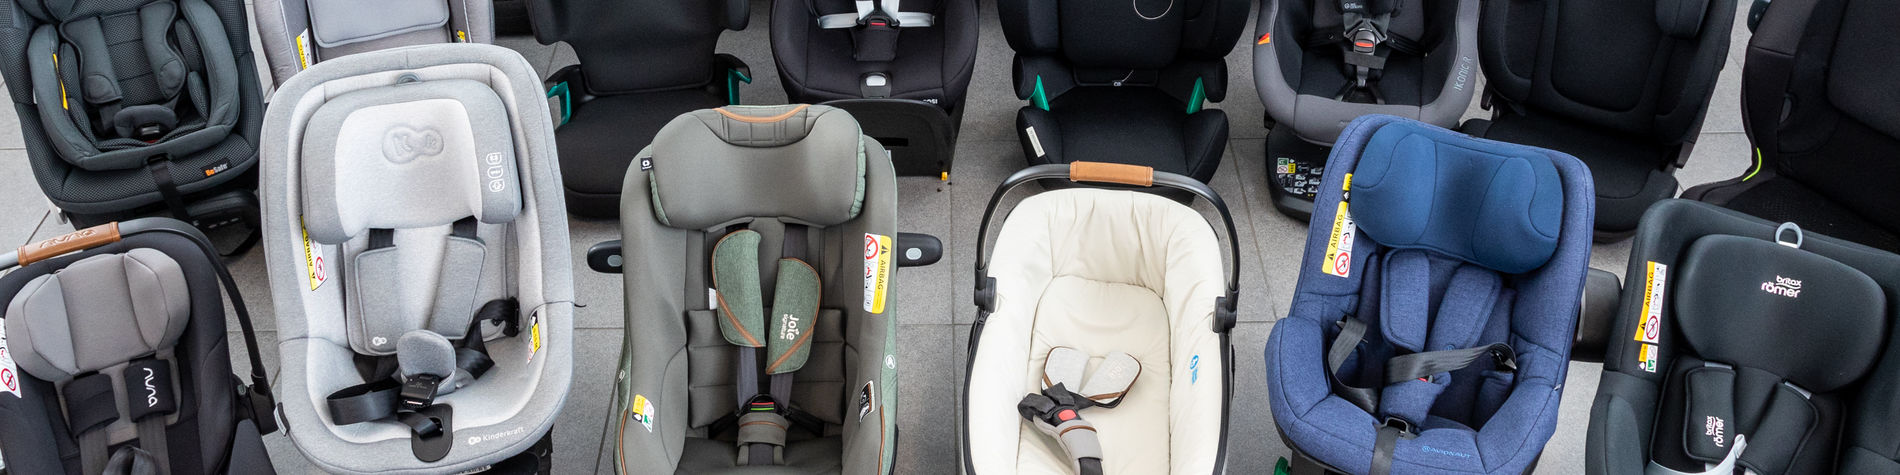 Quels sont les différents types de sièges auto pour enfant